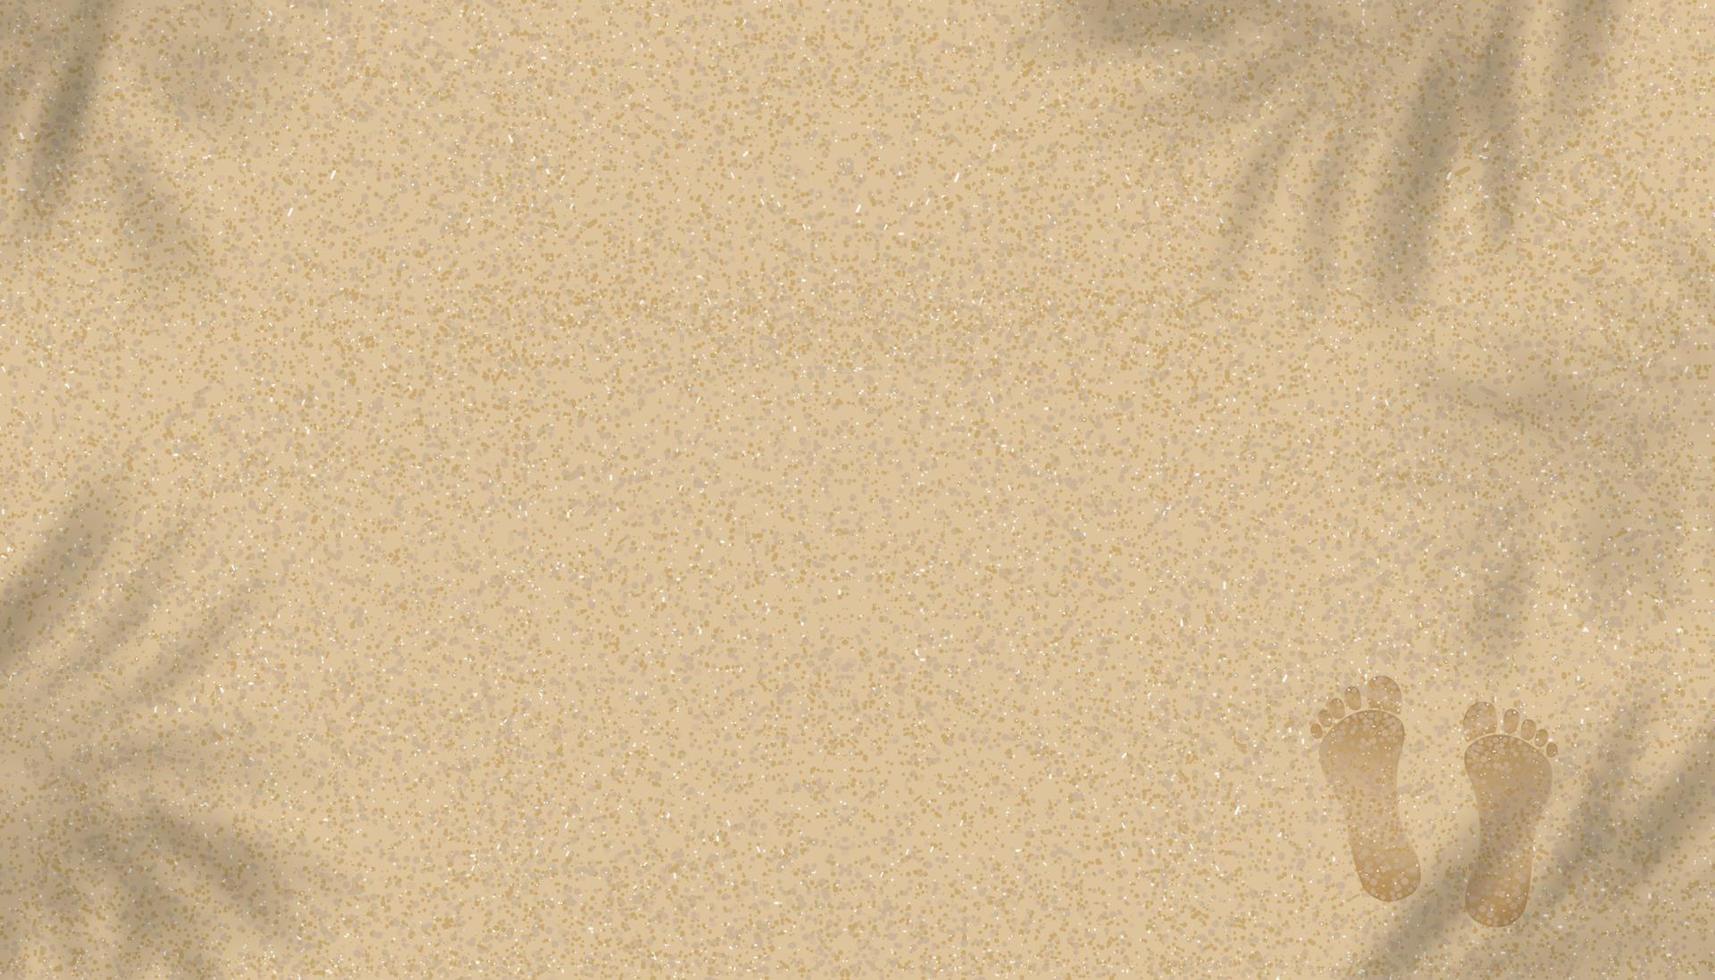 sandstrand textur bakgrund med palmblad skugga och fotspår av mänskliga fötter, vektor illustration bakgrund brun strand sanddyn med barfota för sommar banner bakgrund.